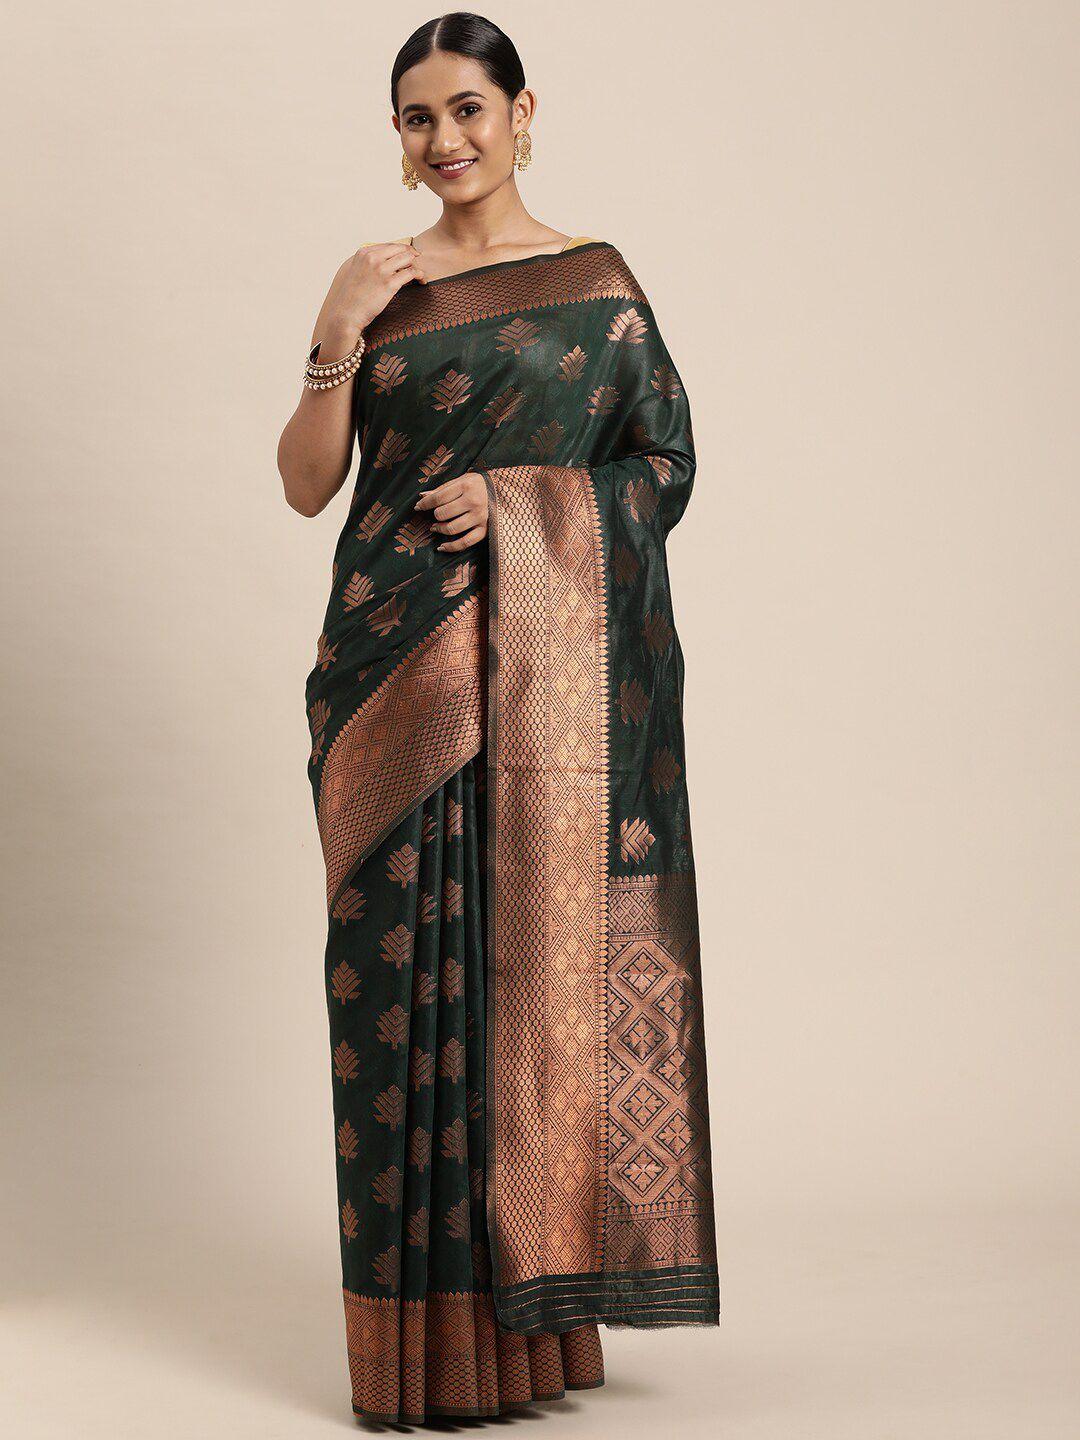 gajarai olive green & copper-toned woven design zari silk blend banarasi saree